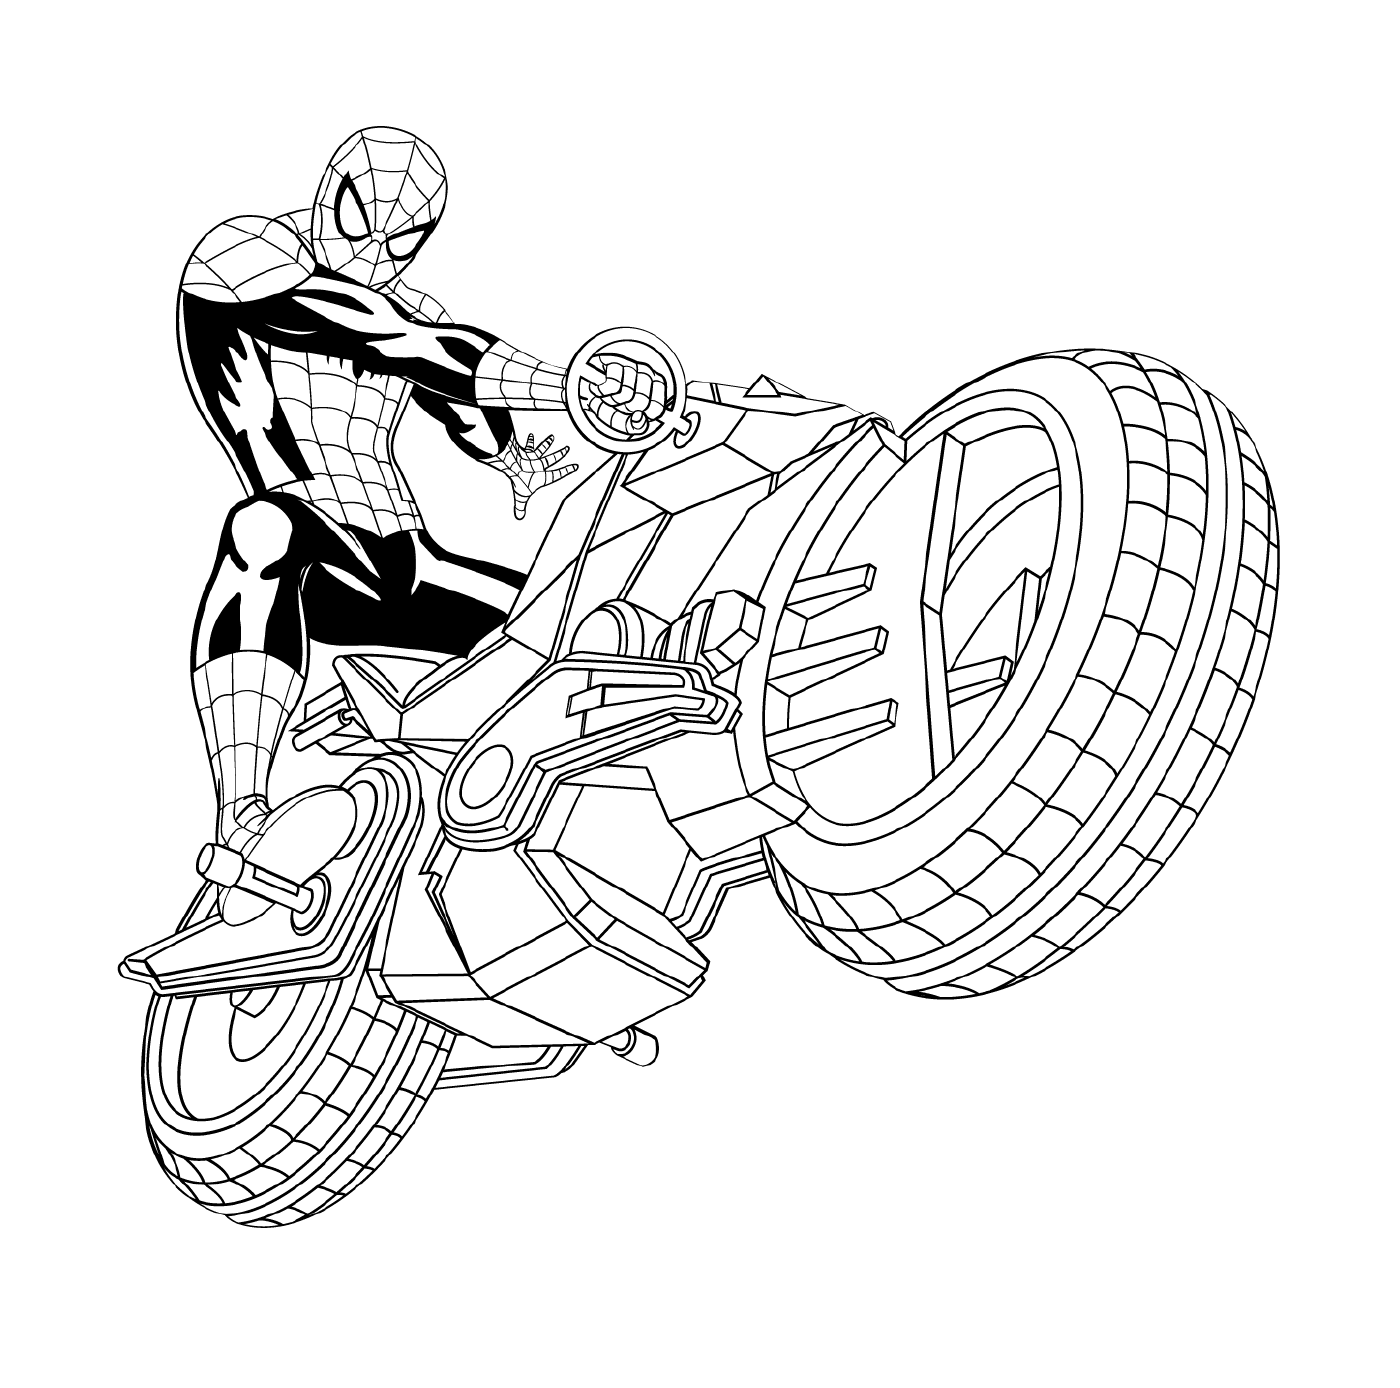  Homem-Aranha em sua motocicleta 